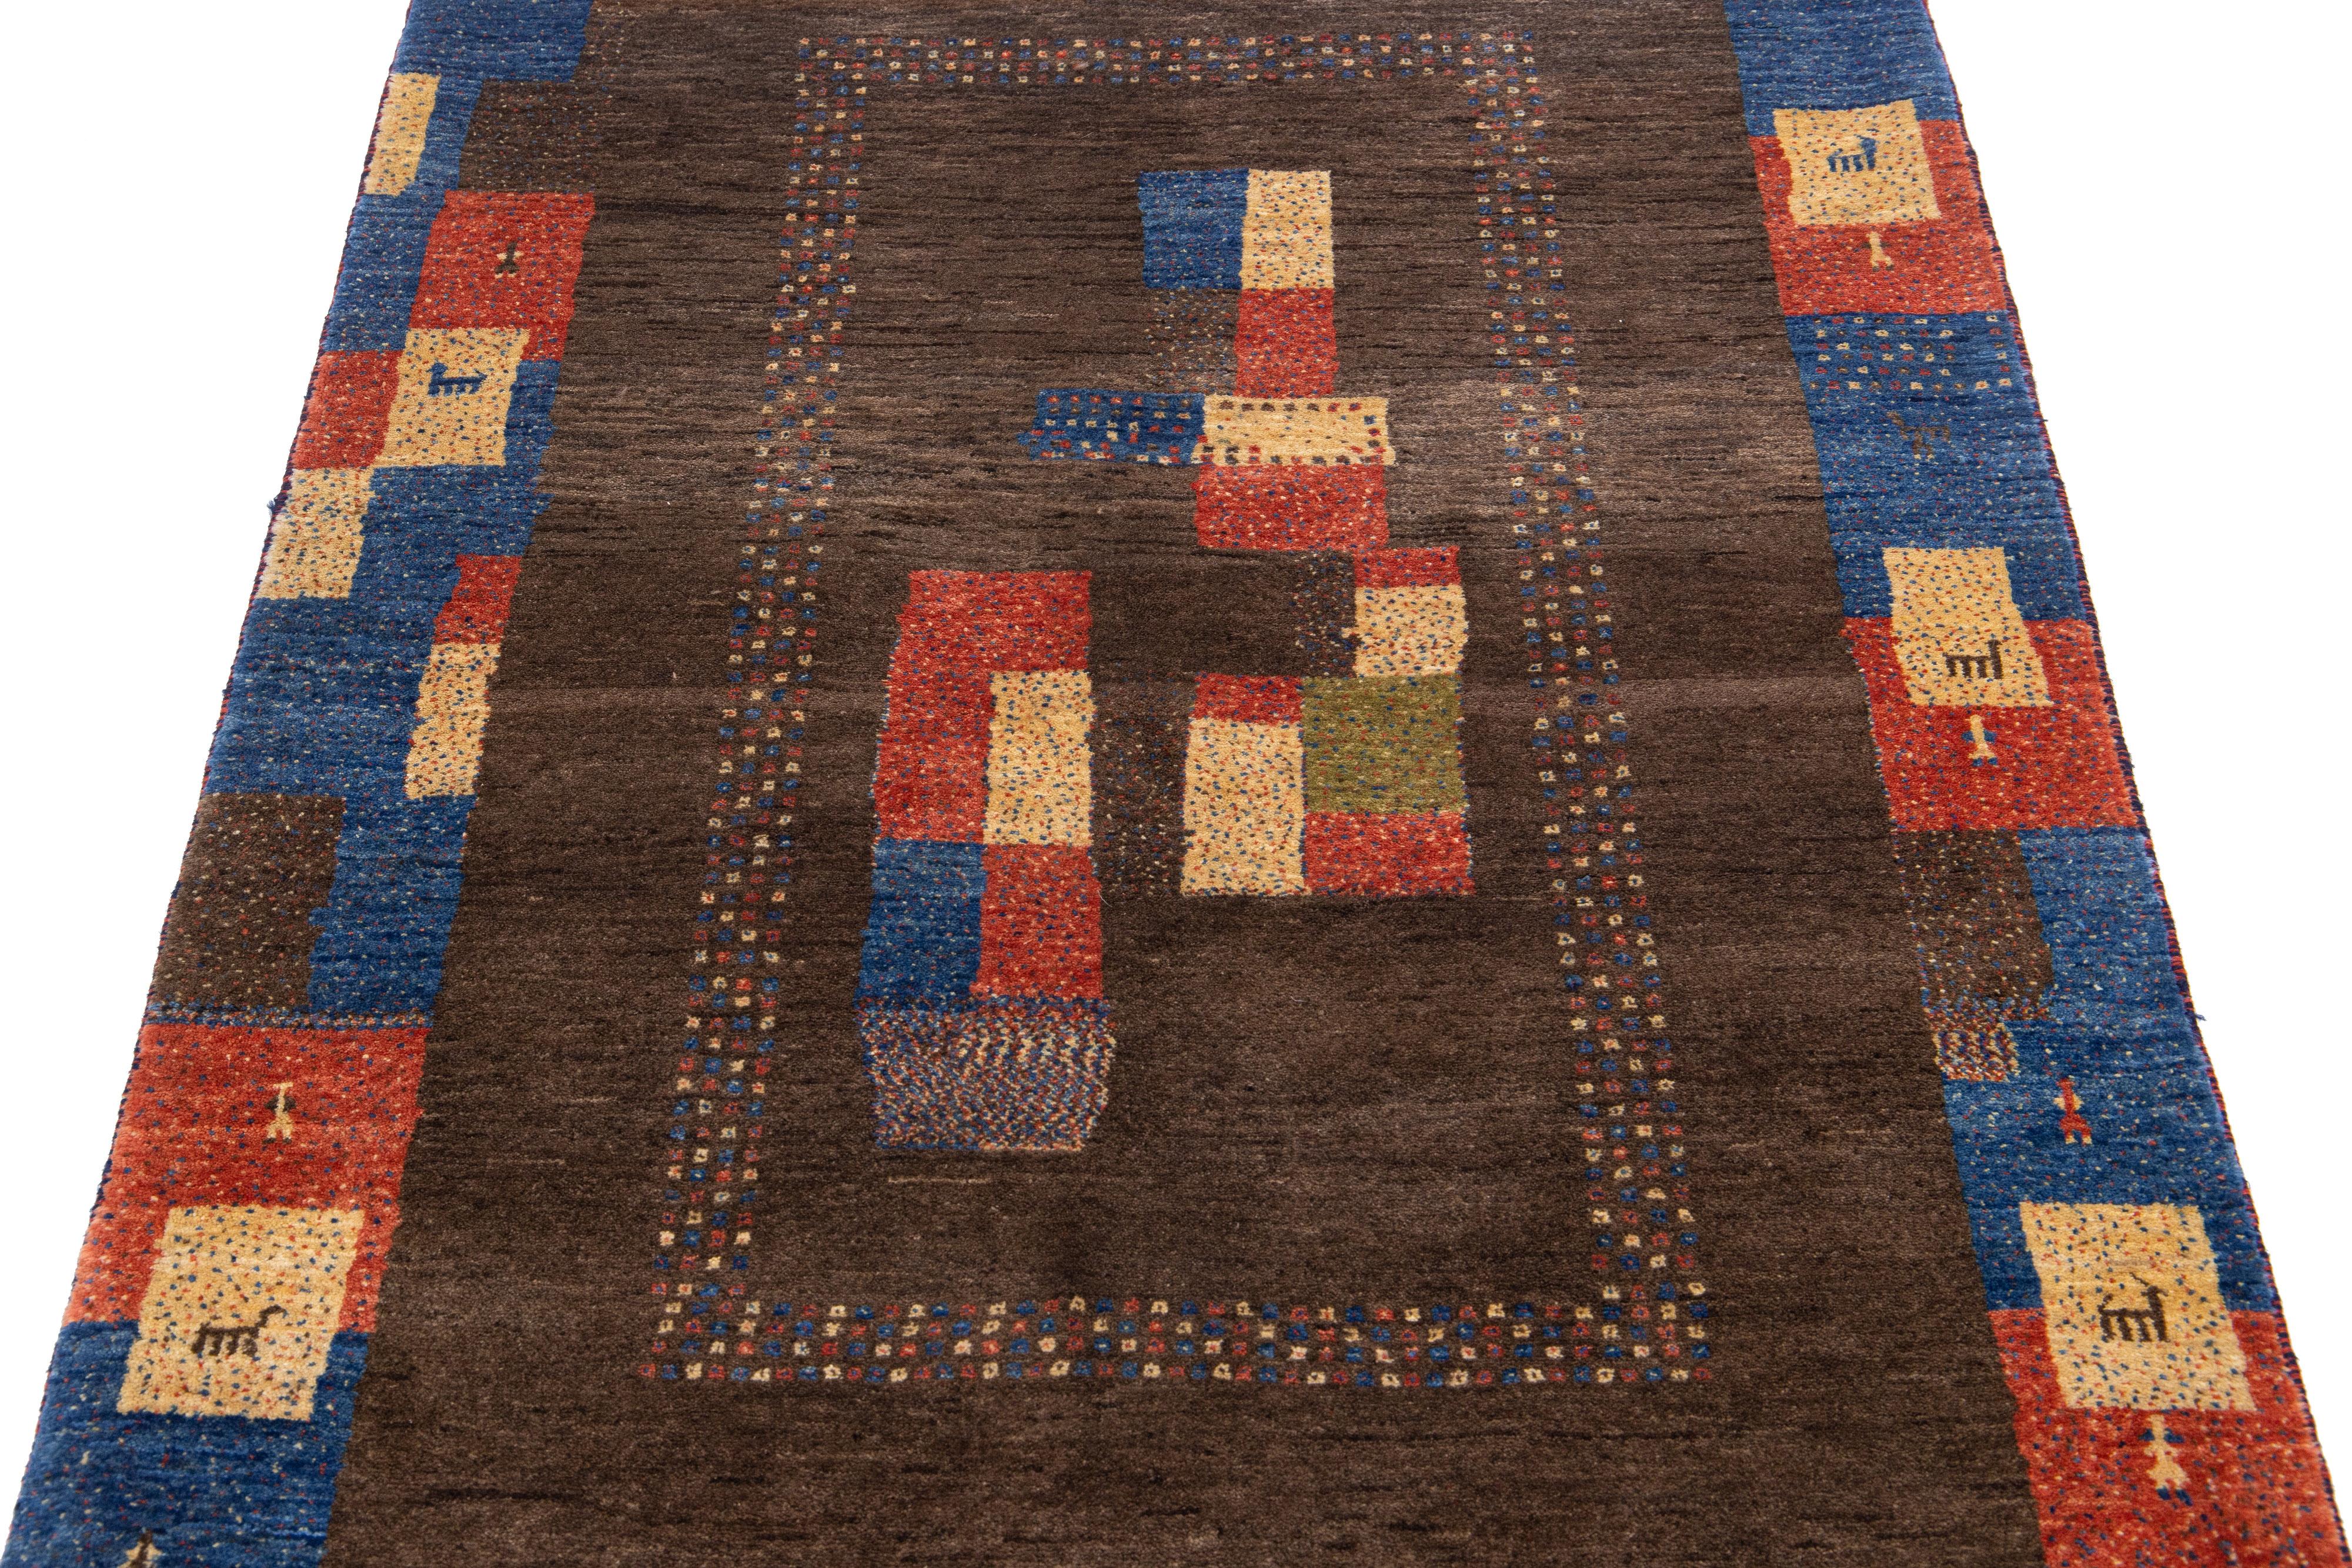 Magnifique tapis moderne en laine tissée à la main de style Gabbeh, avec un champ de couleur marron. Ce tapis persan présente un superbe design minimaliste avec un cadre bleu marine et des accents multicolores.

Ce tapis mesure : 3'6